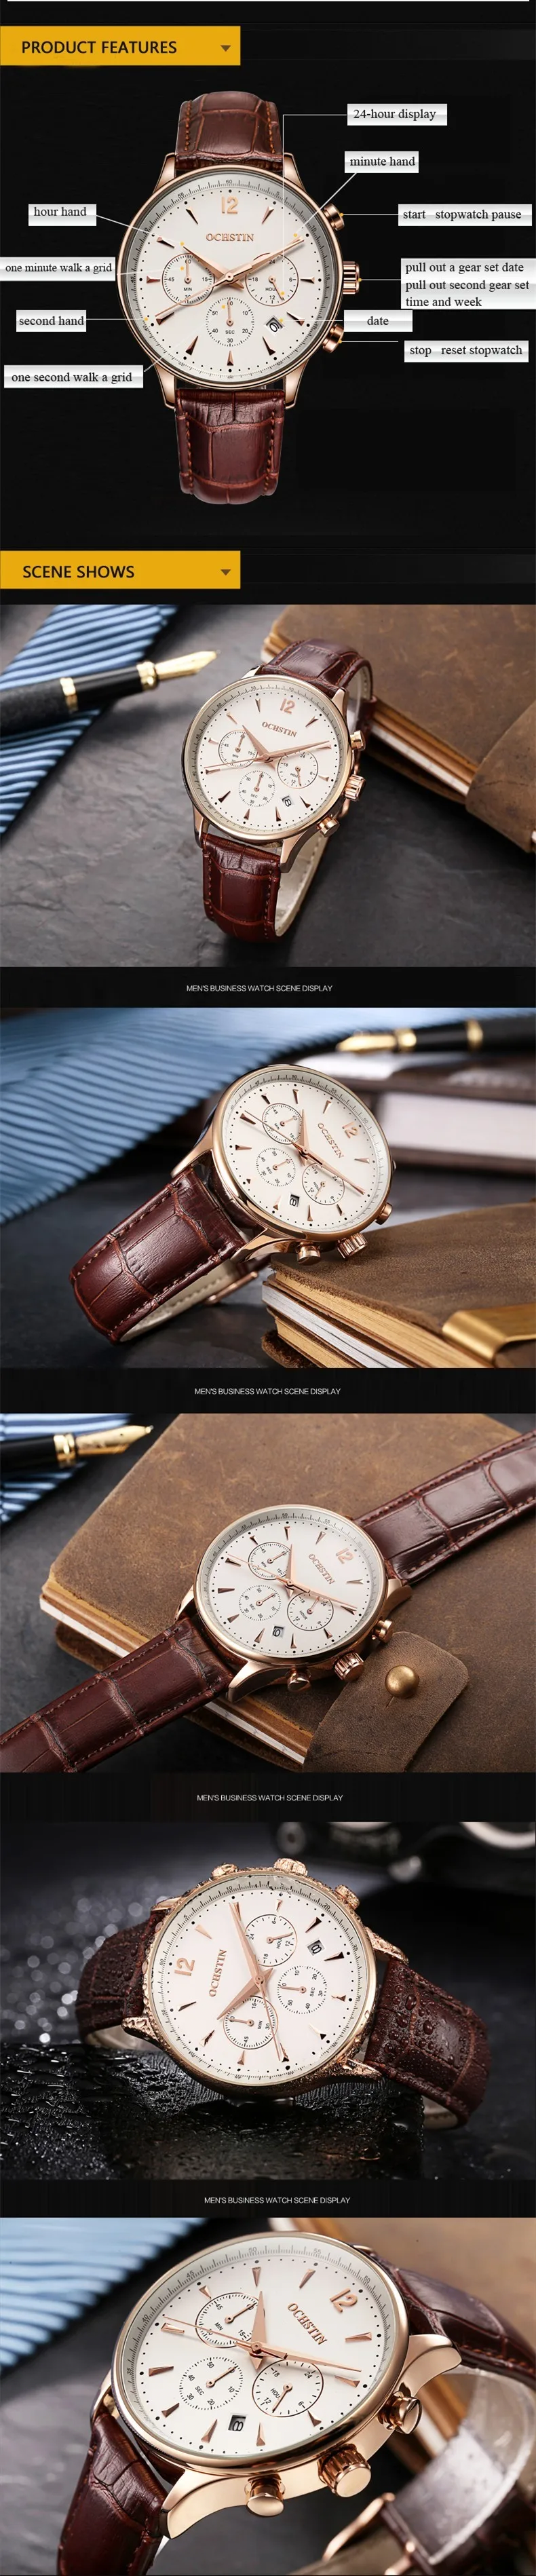 Мужские кварцевые часы OCHSTIN Топ бренд класса люкс водонепроницаемый хронограф кожа Бизнес наручные часы Часы мужские Relogio Masculino